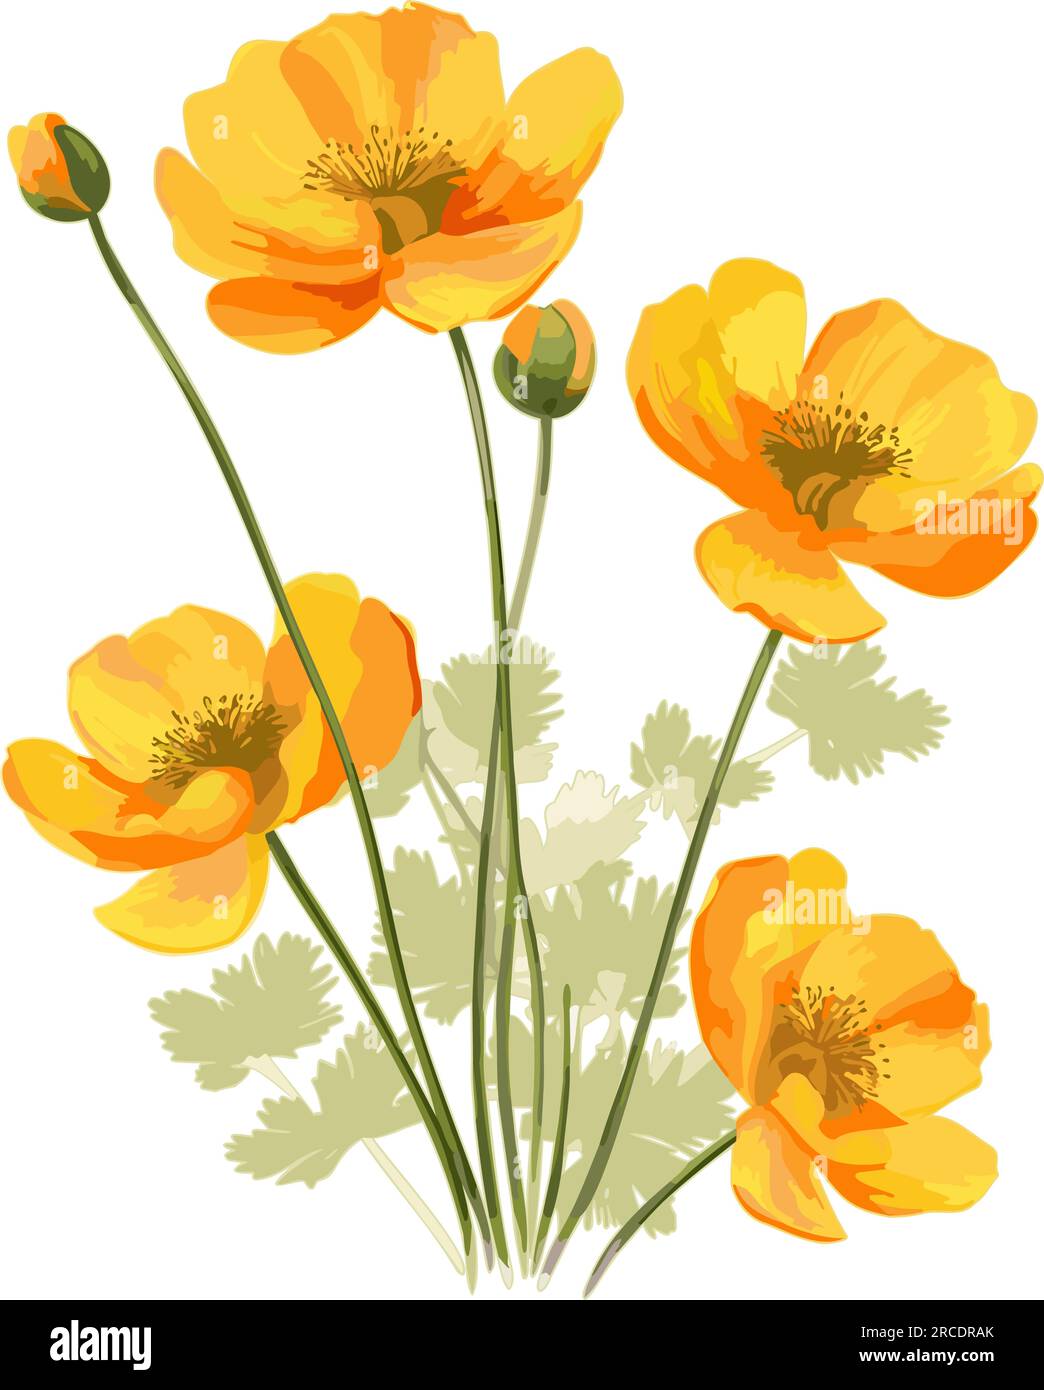 Coquelicots isolés. Fleurs oranges aquarelles avec tige et feuilles vertes. Illustration vectorielle. Illustration de Vecteur